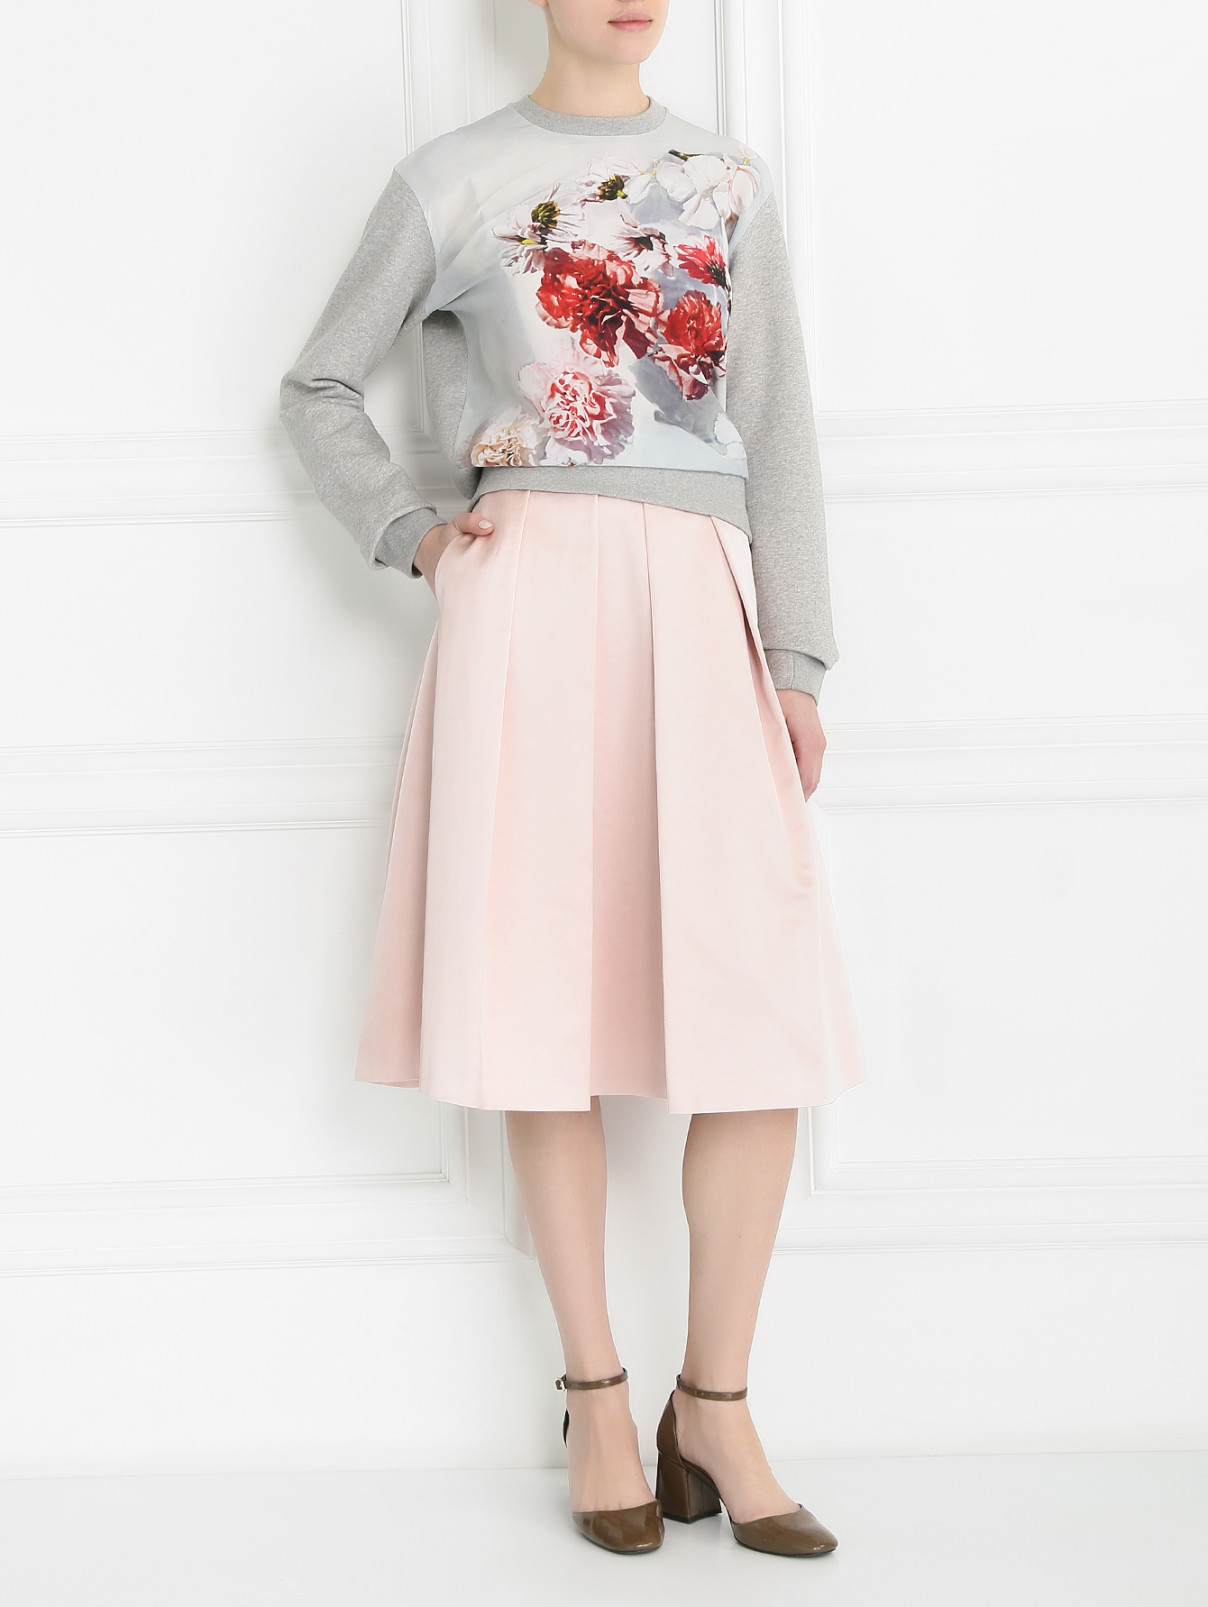 Атласная юбка из хлопка и вискозы Paul Smith  –  Модель Общий вид  – Цвет:  Розовый